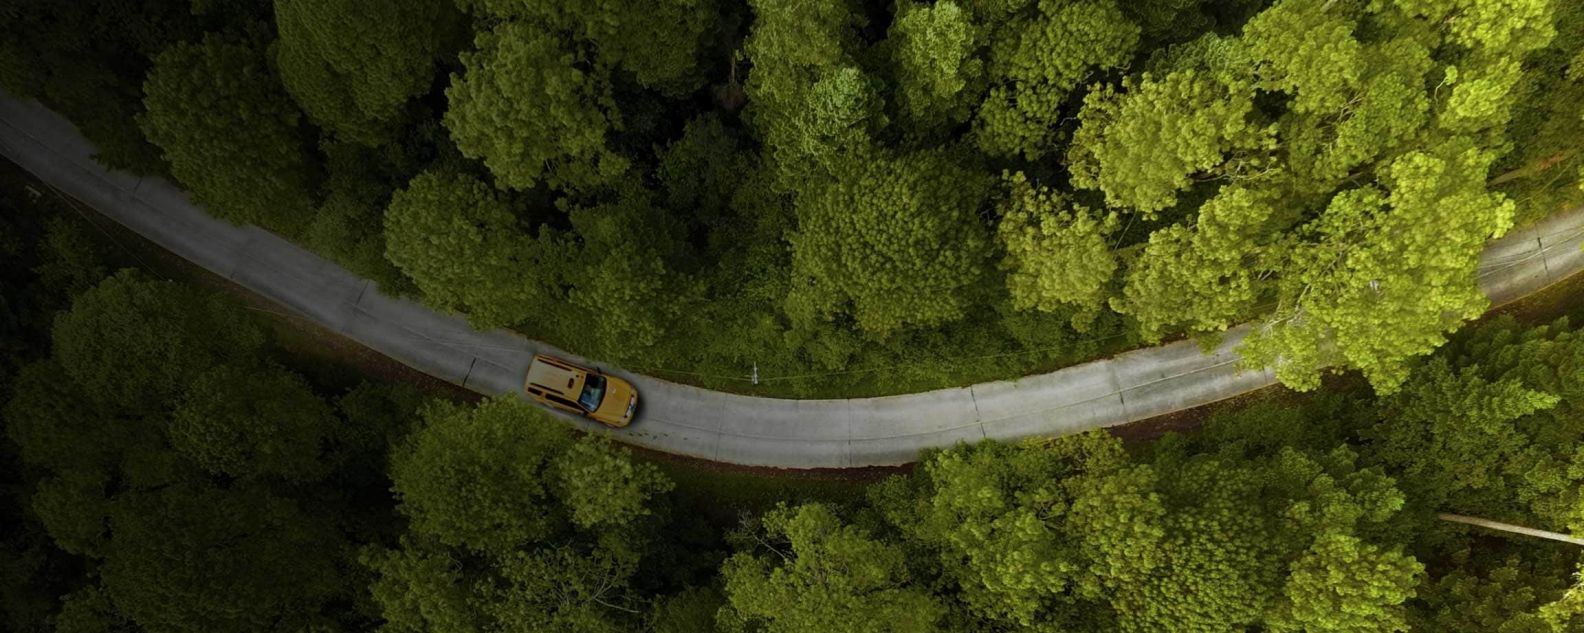 Vista aerea di un'auto su una strada fiancheggiata da alberi